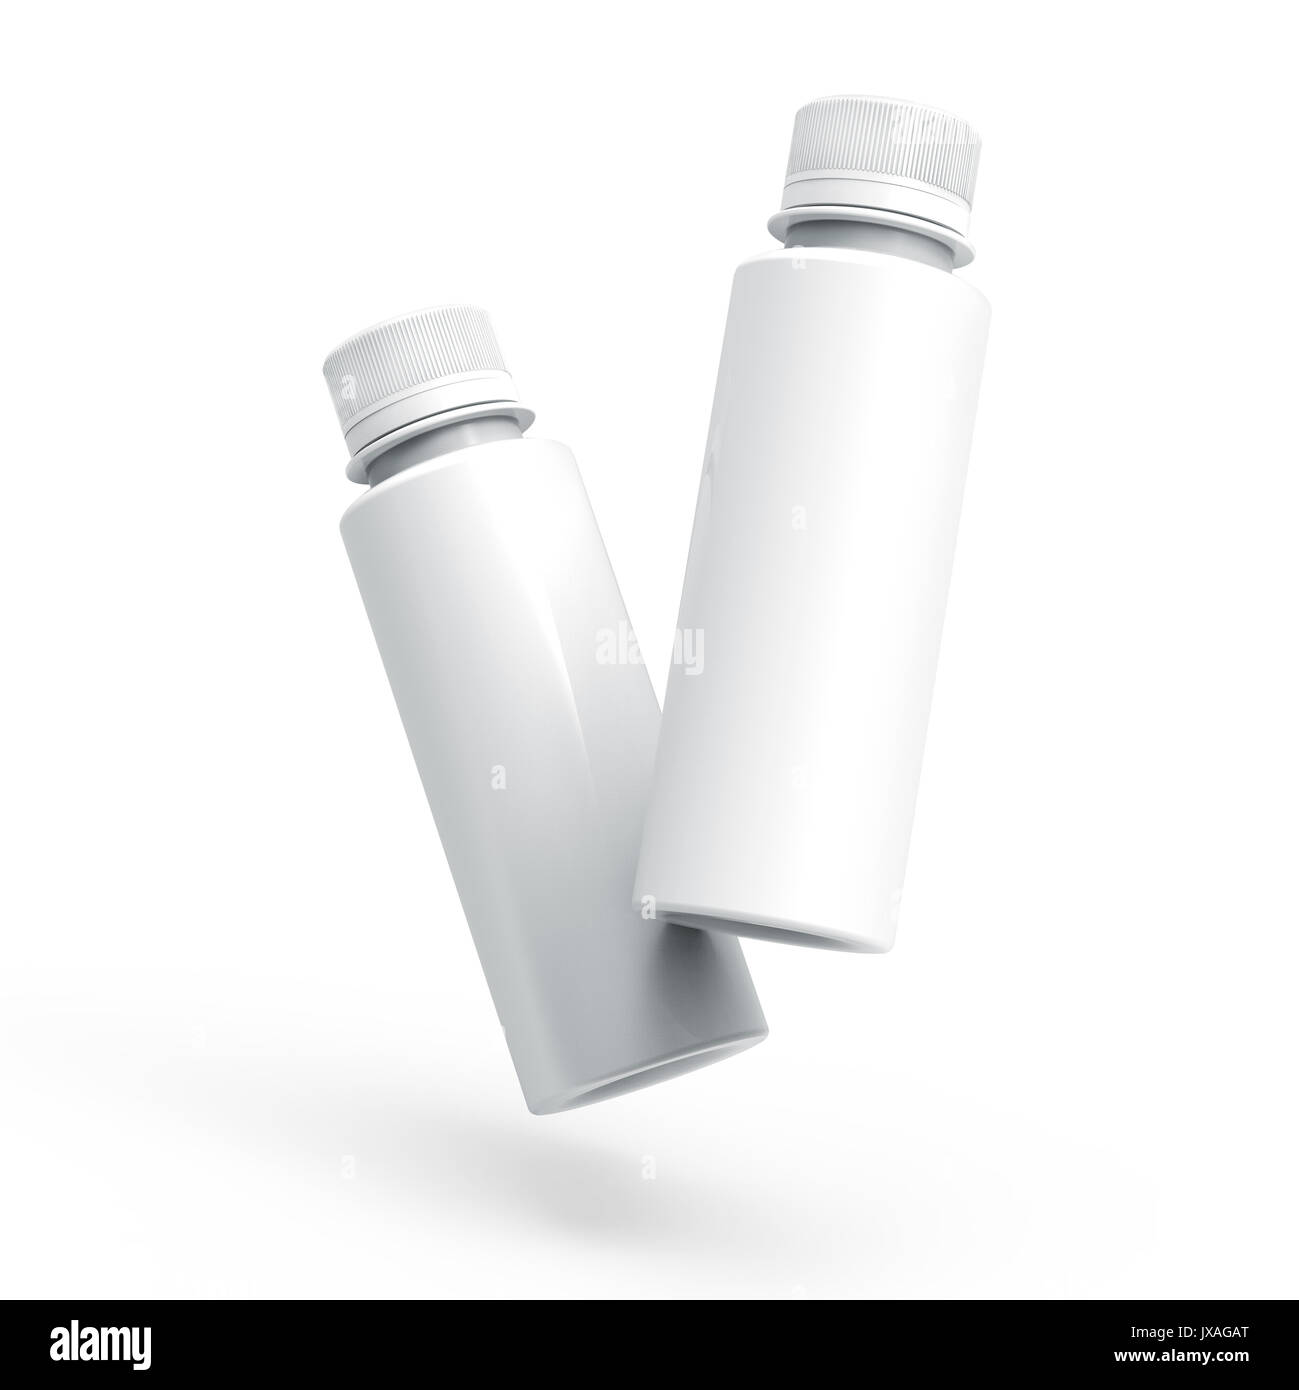 Plastikflasche für Getränke, leere Flasche mockup Vorlage in 3D Rendering auf Weiß für Design wird isoliert, zwei Flaschen Sammlung Stockfoto